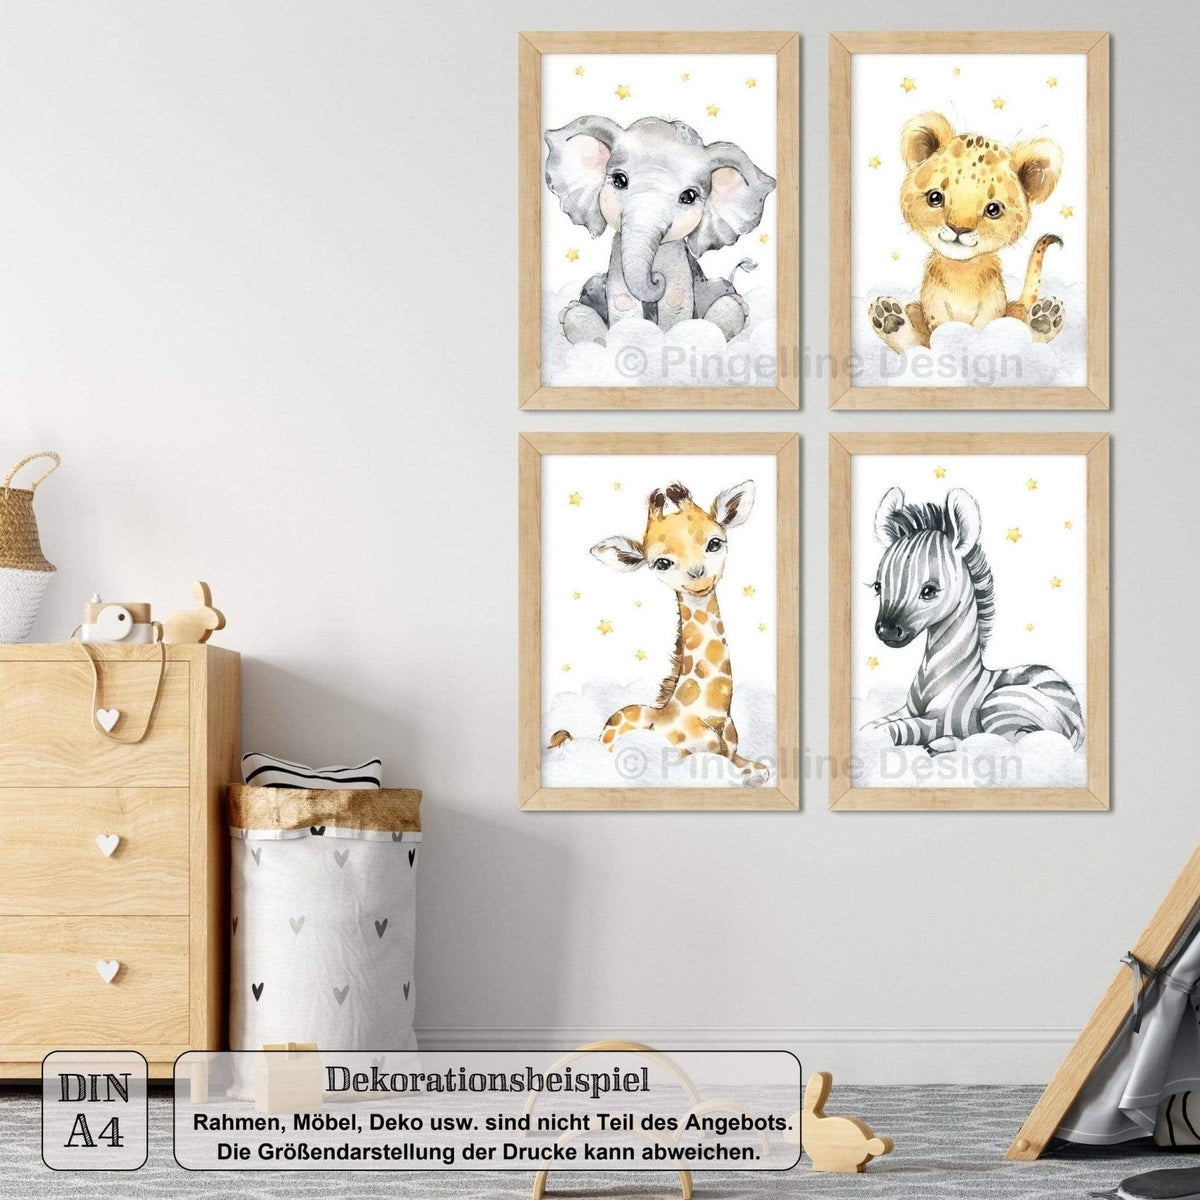 Pingelline / A4 4er A3 Kinderzimmer Bilder - Tiere Design Safari Set